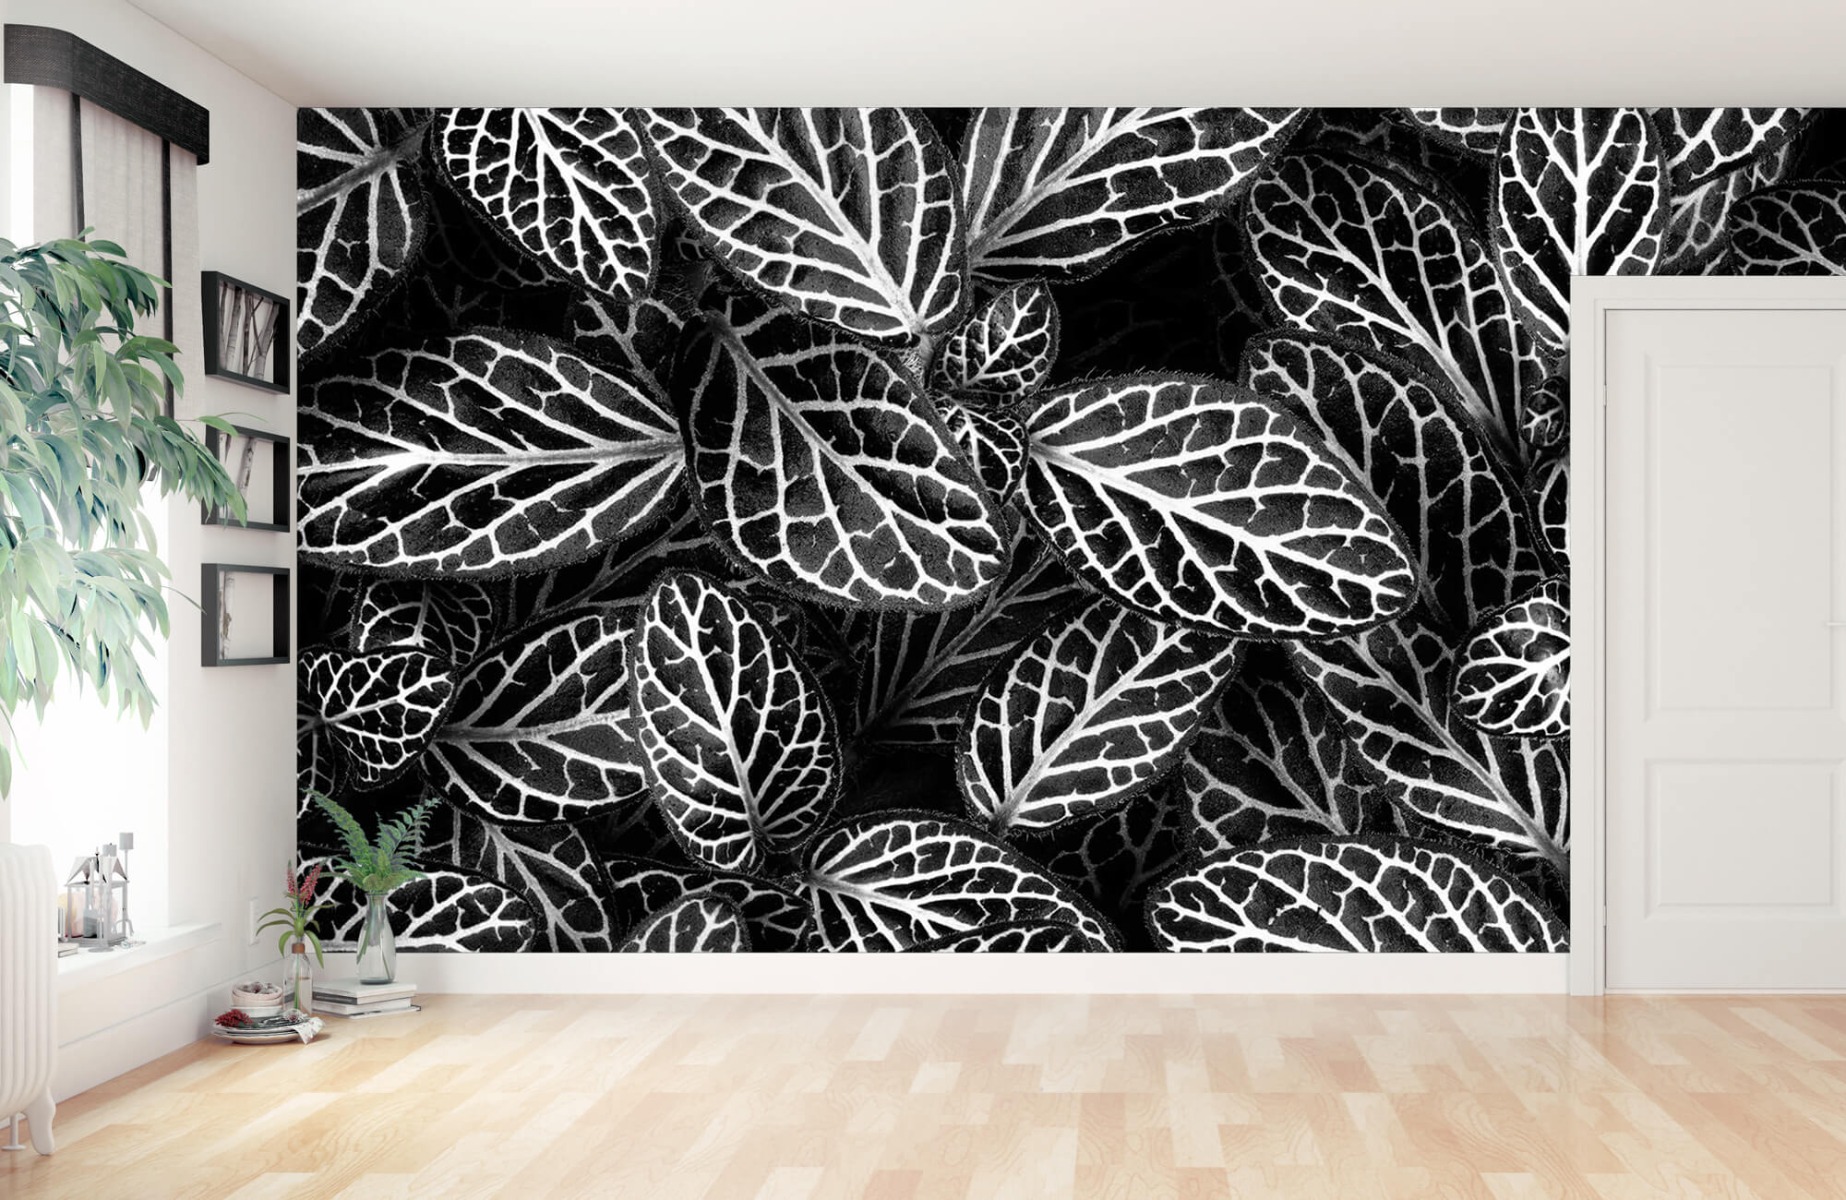 Blanco y negro - Papel pintado con Fittonia - Sala de reuniones 10